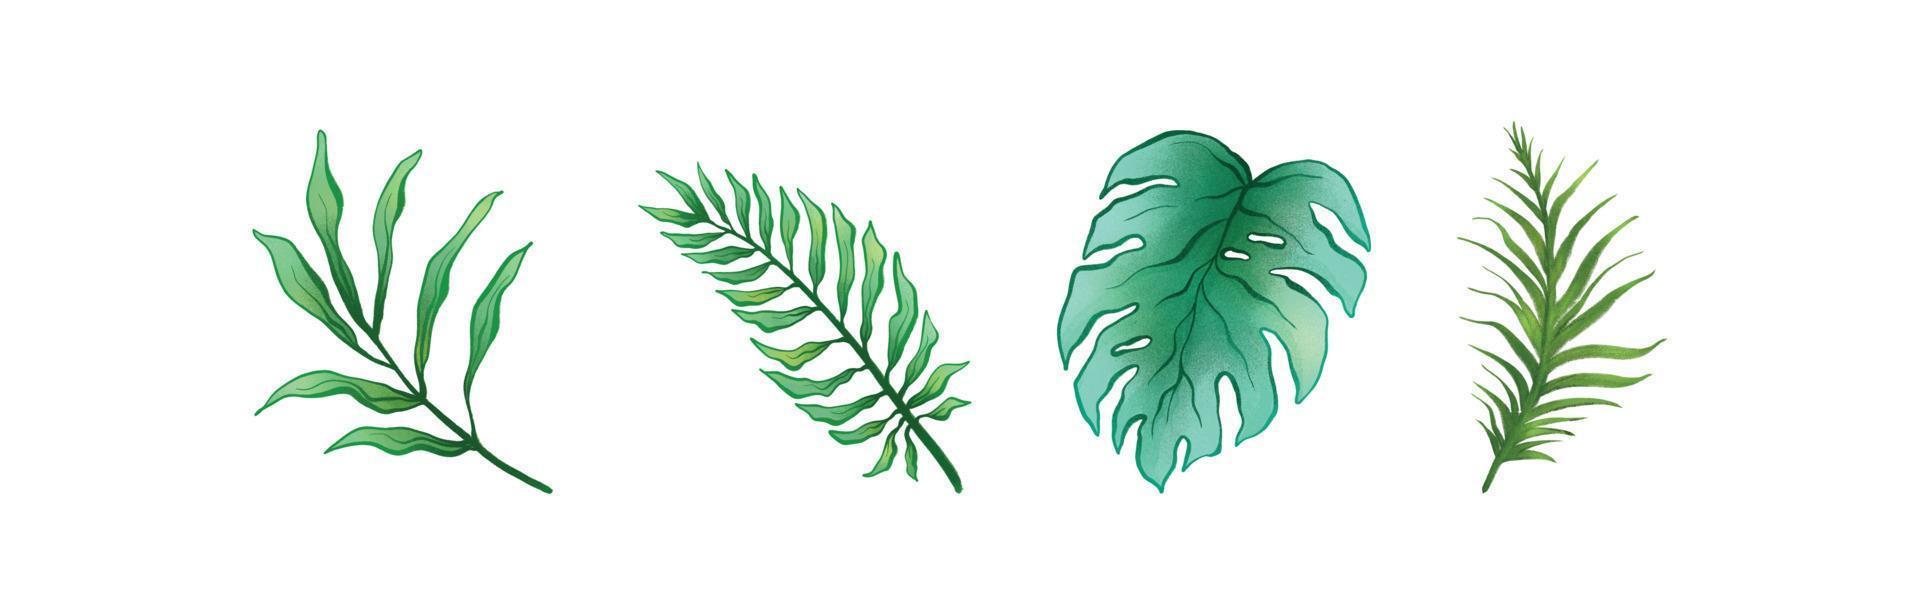 hojas tropicales para la temporada de verano conjunto de acuarela 02 vector